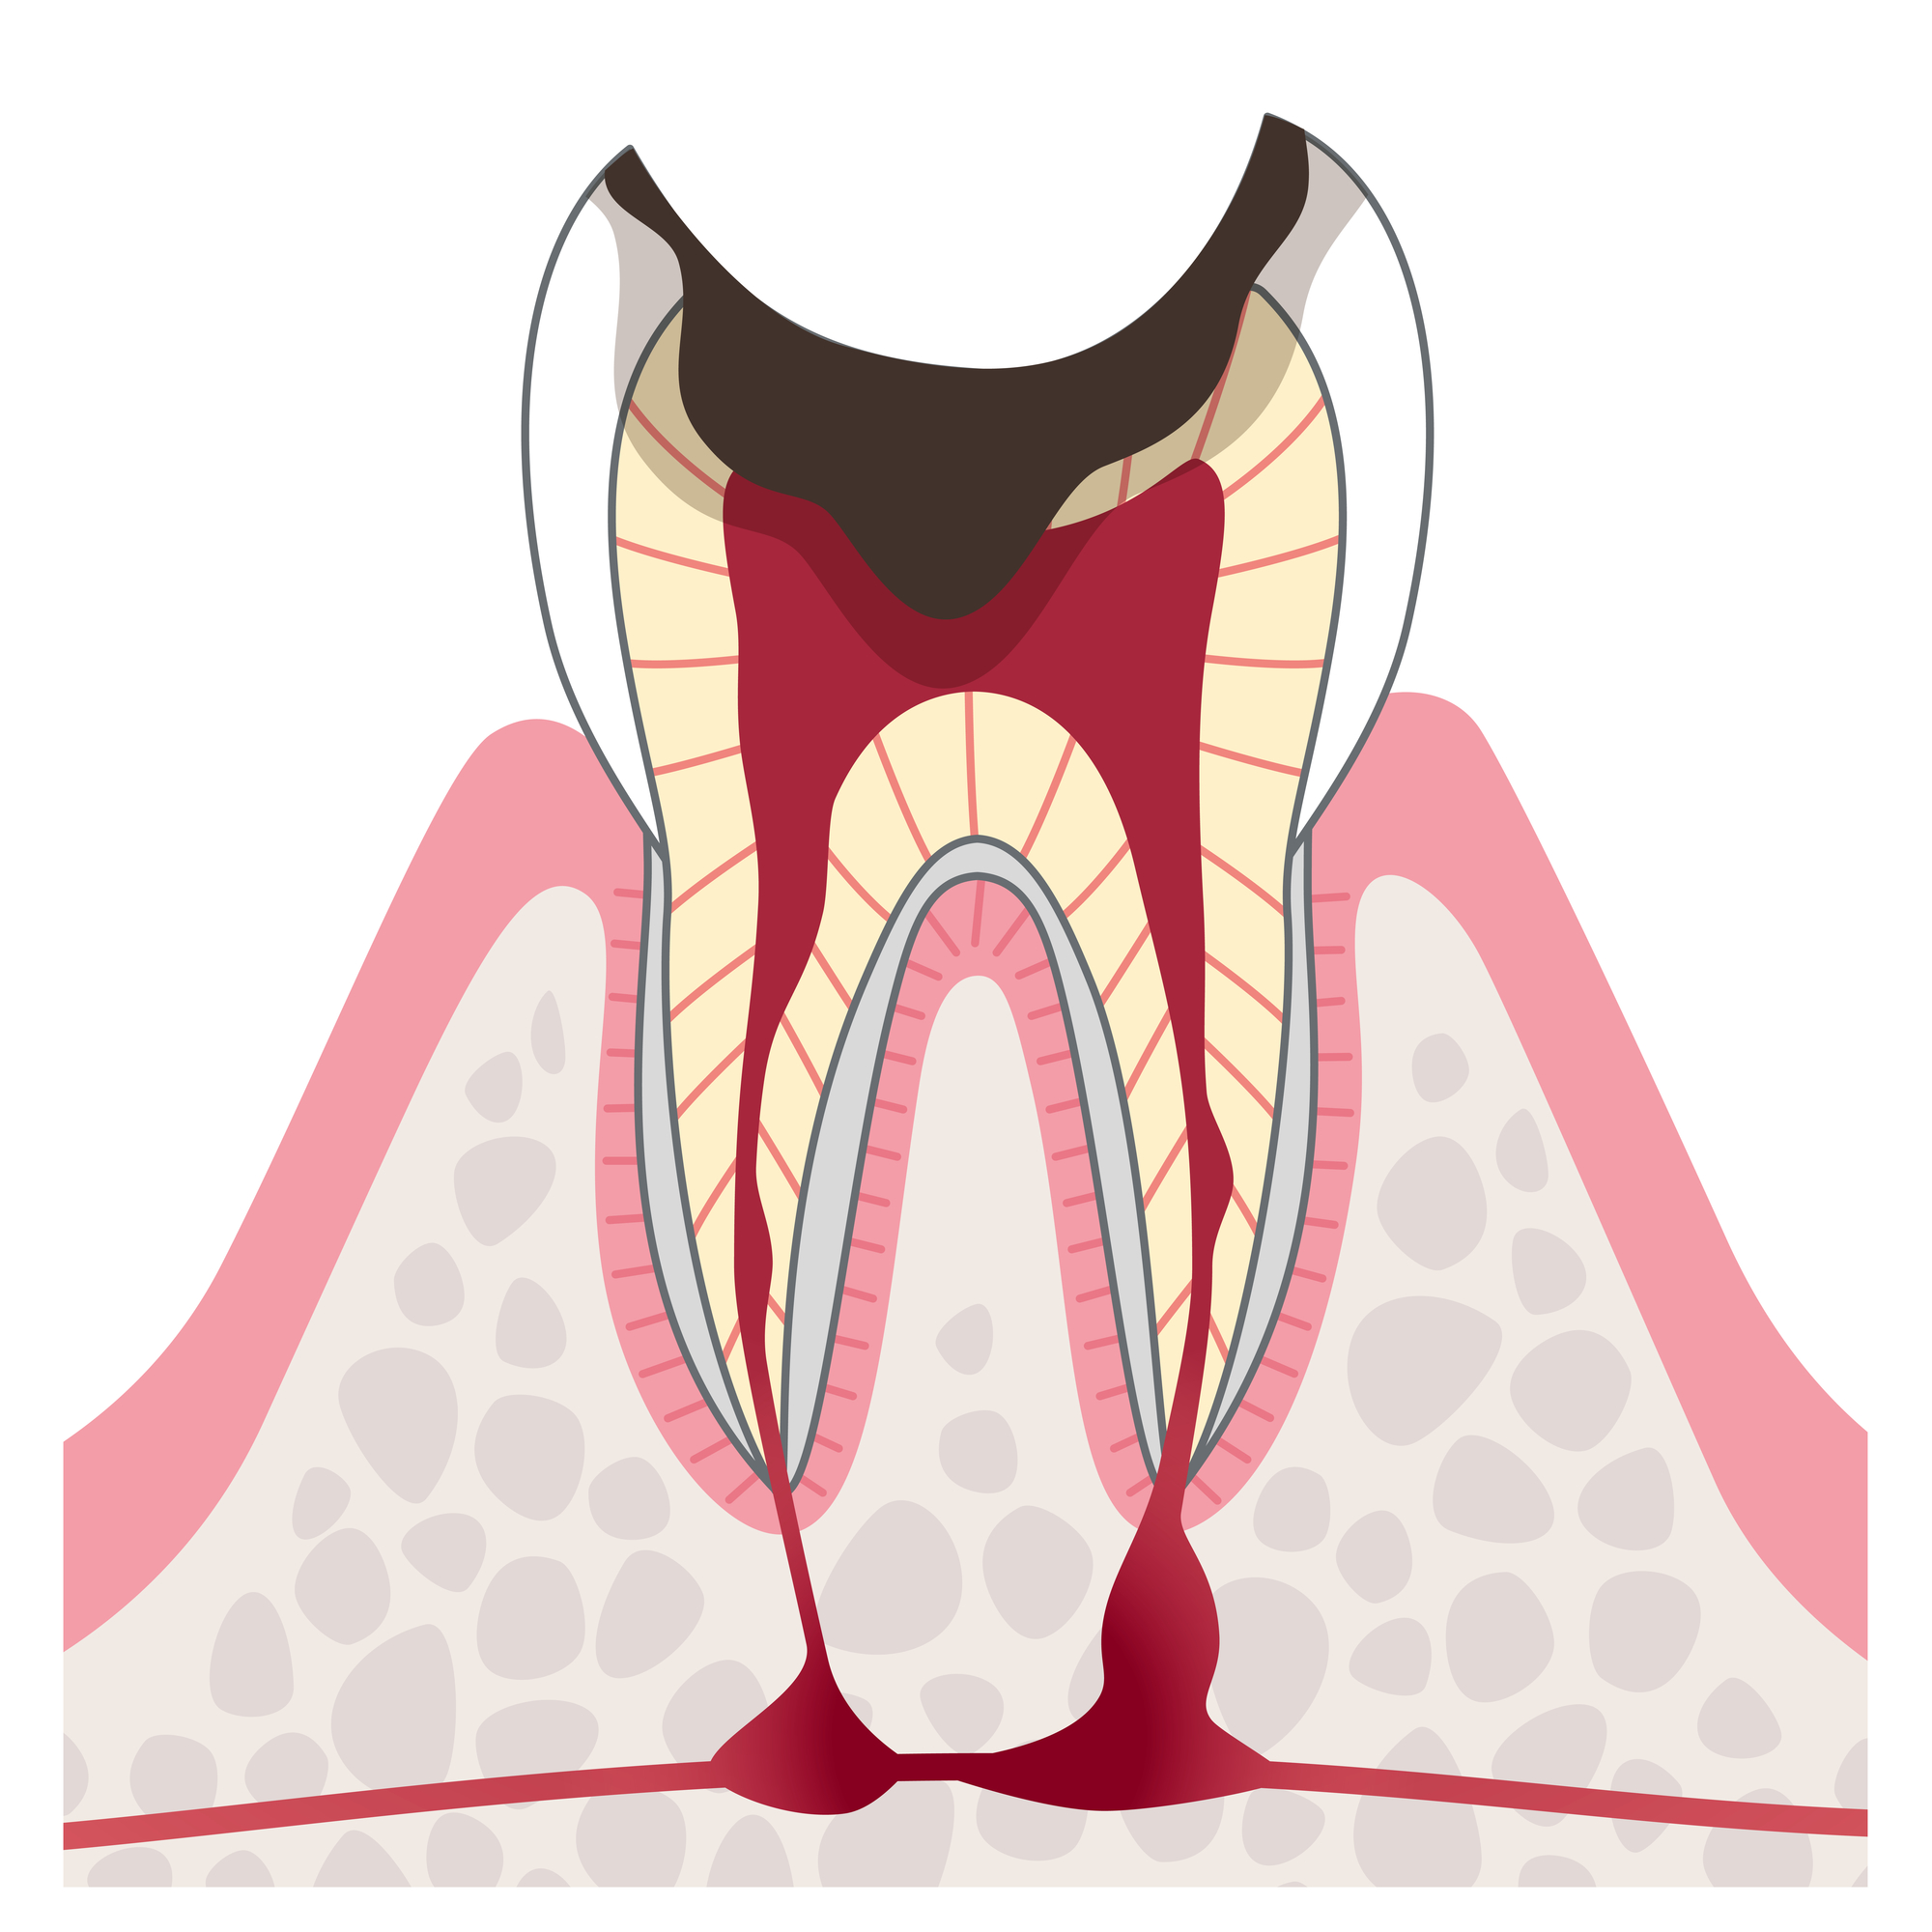 発熱で歯が痛む それは虫歯だけでなく他の病気が潜んでいる可能性が